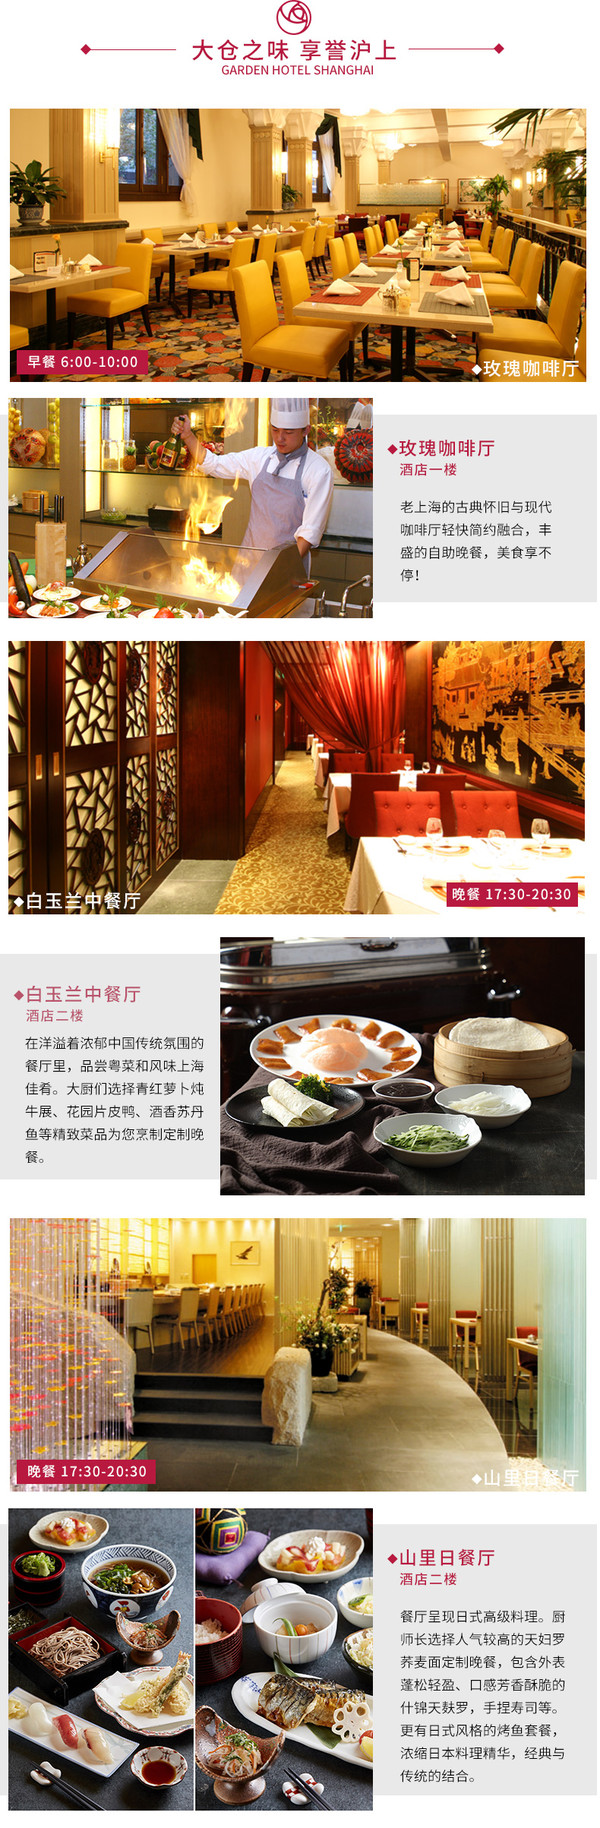 周末节假日不涨价！上海花园饭店高级房1晚+含早+双人定制晚餐